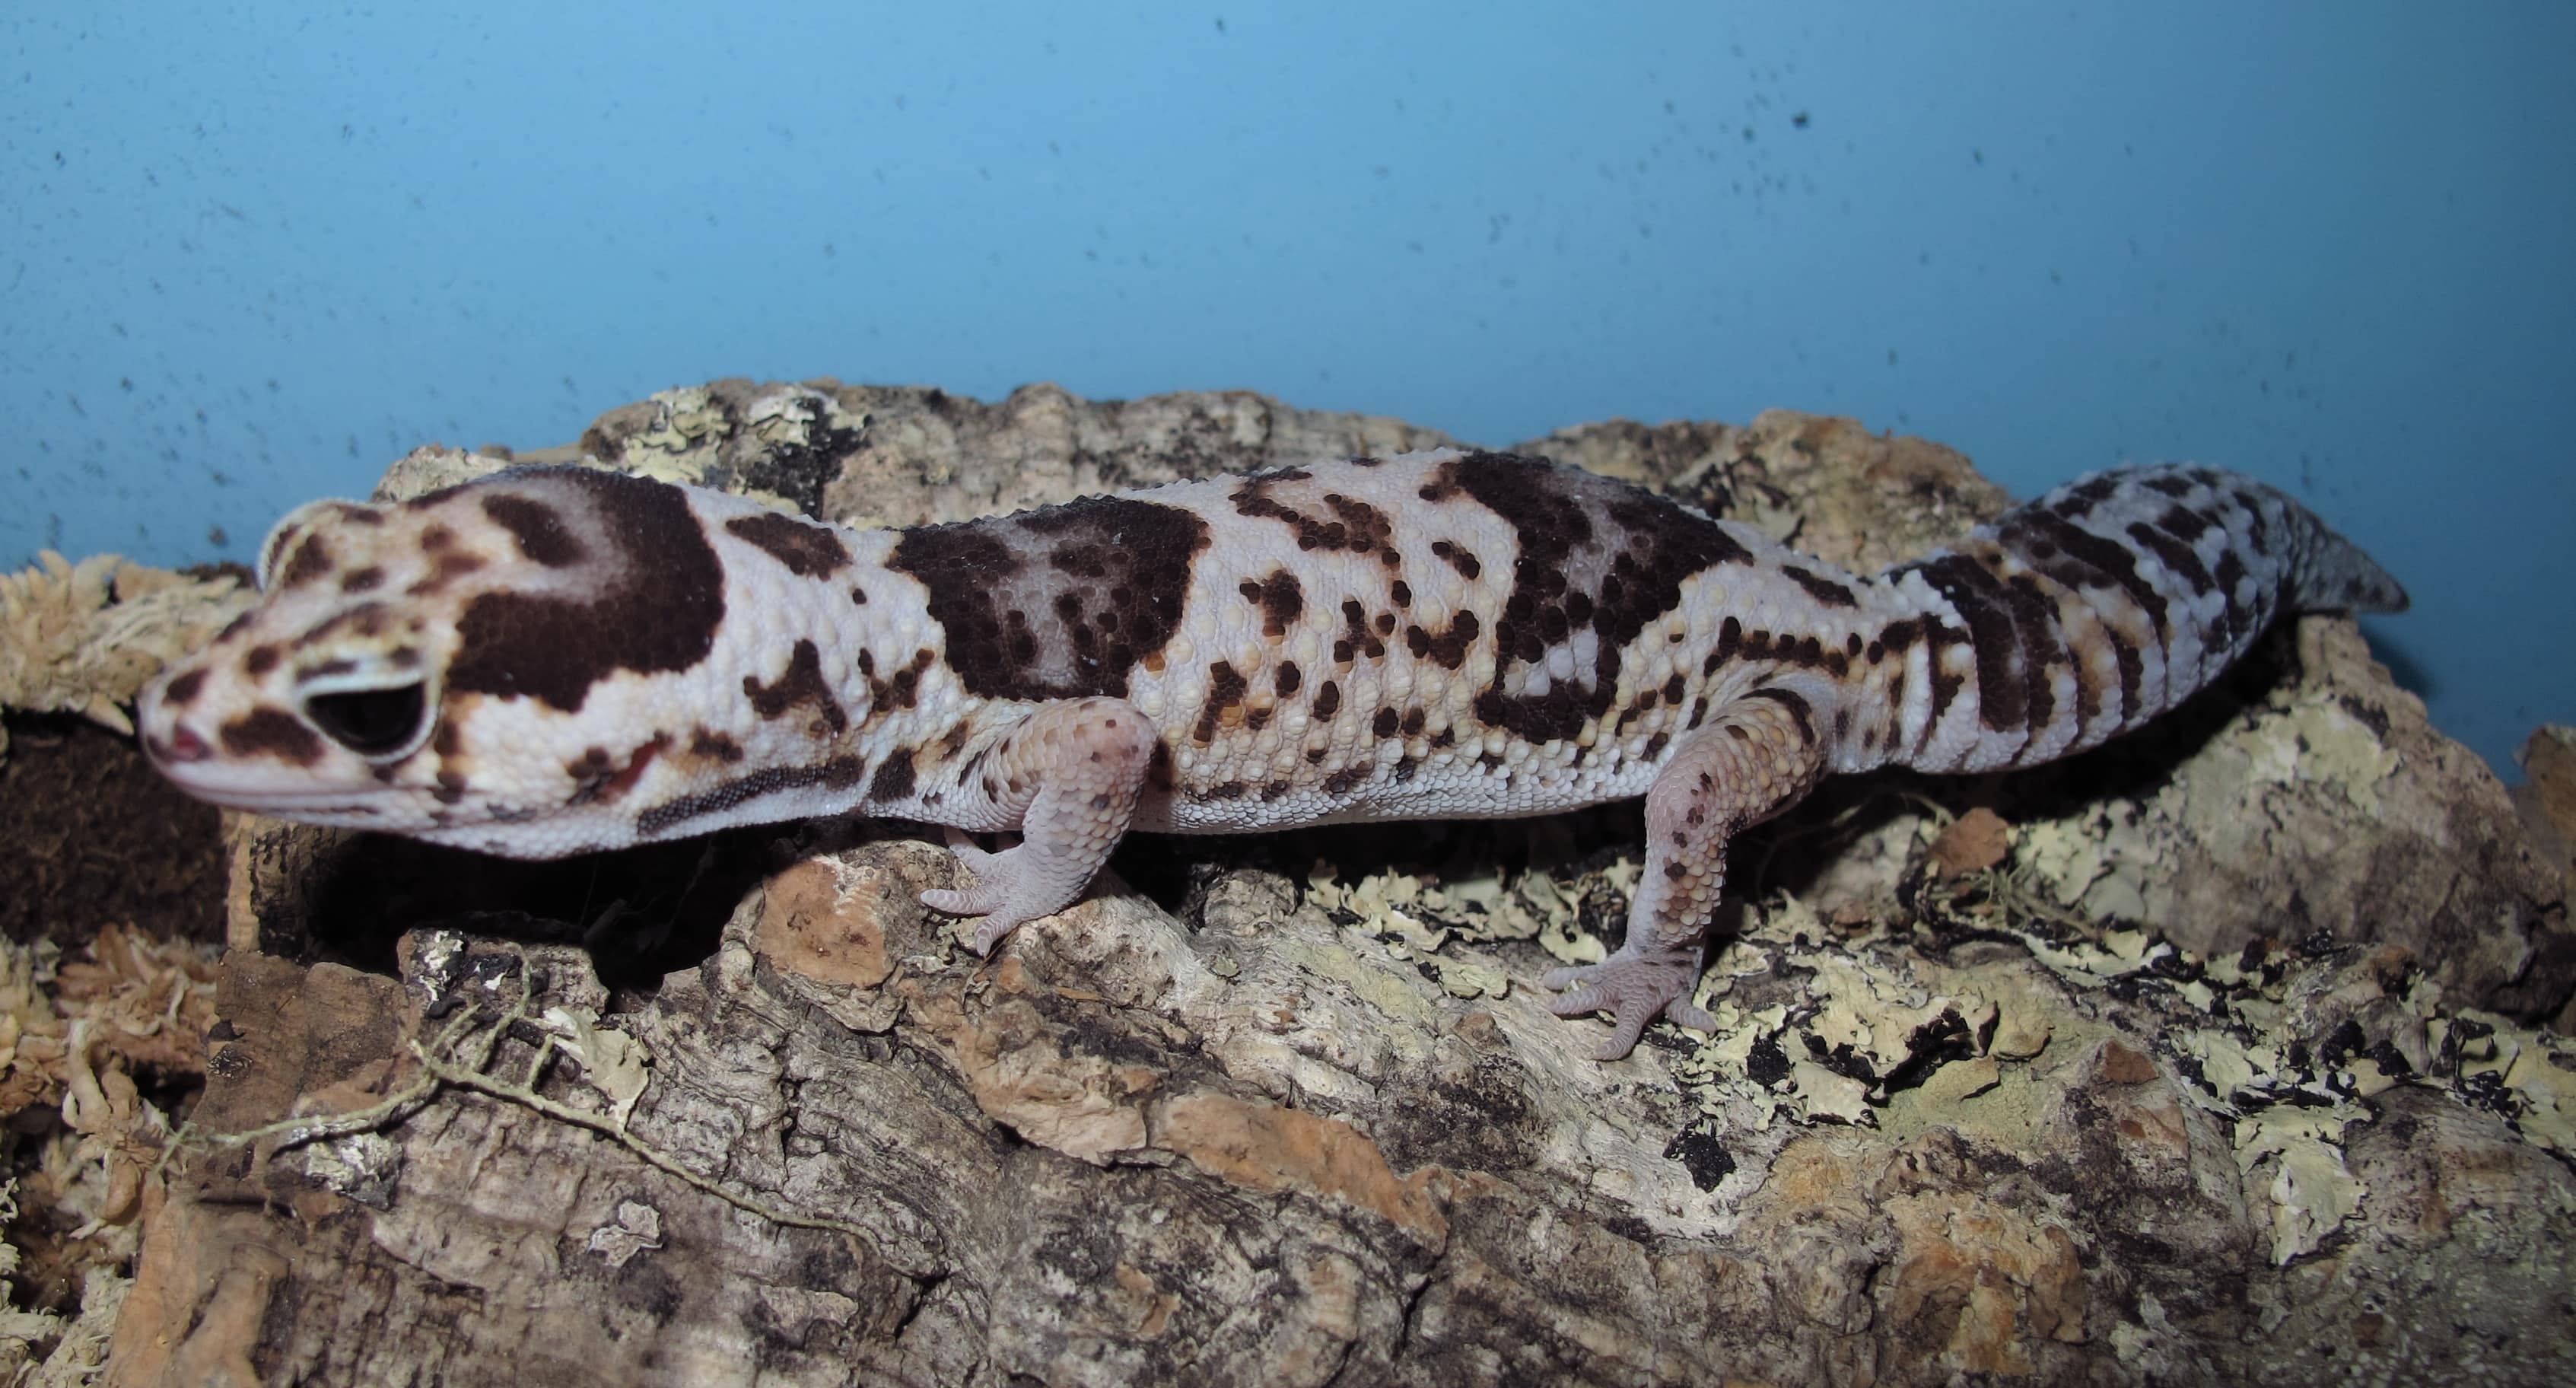 African Fat Tail Geckos